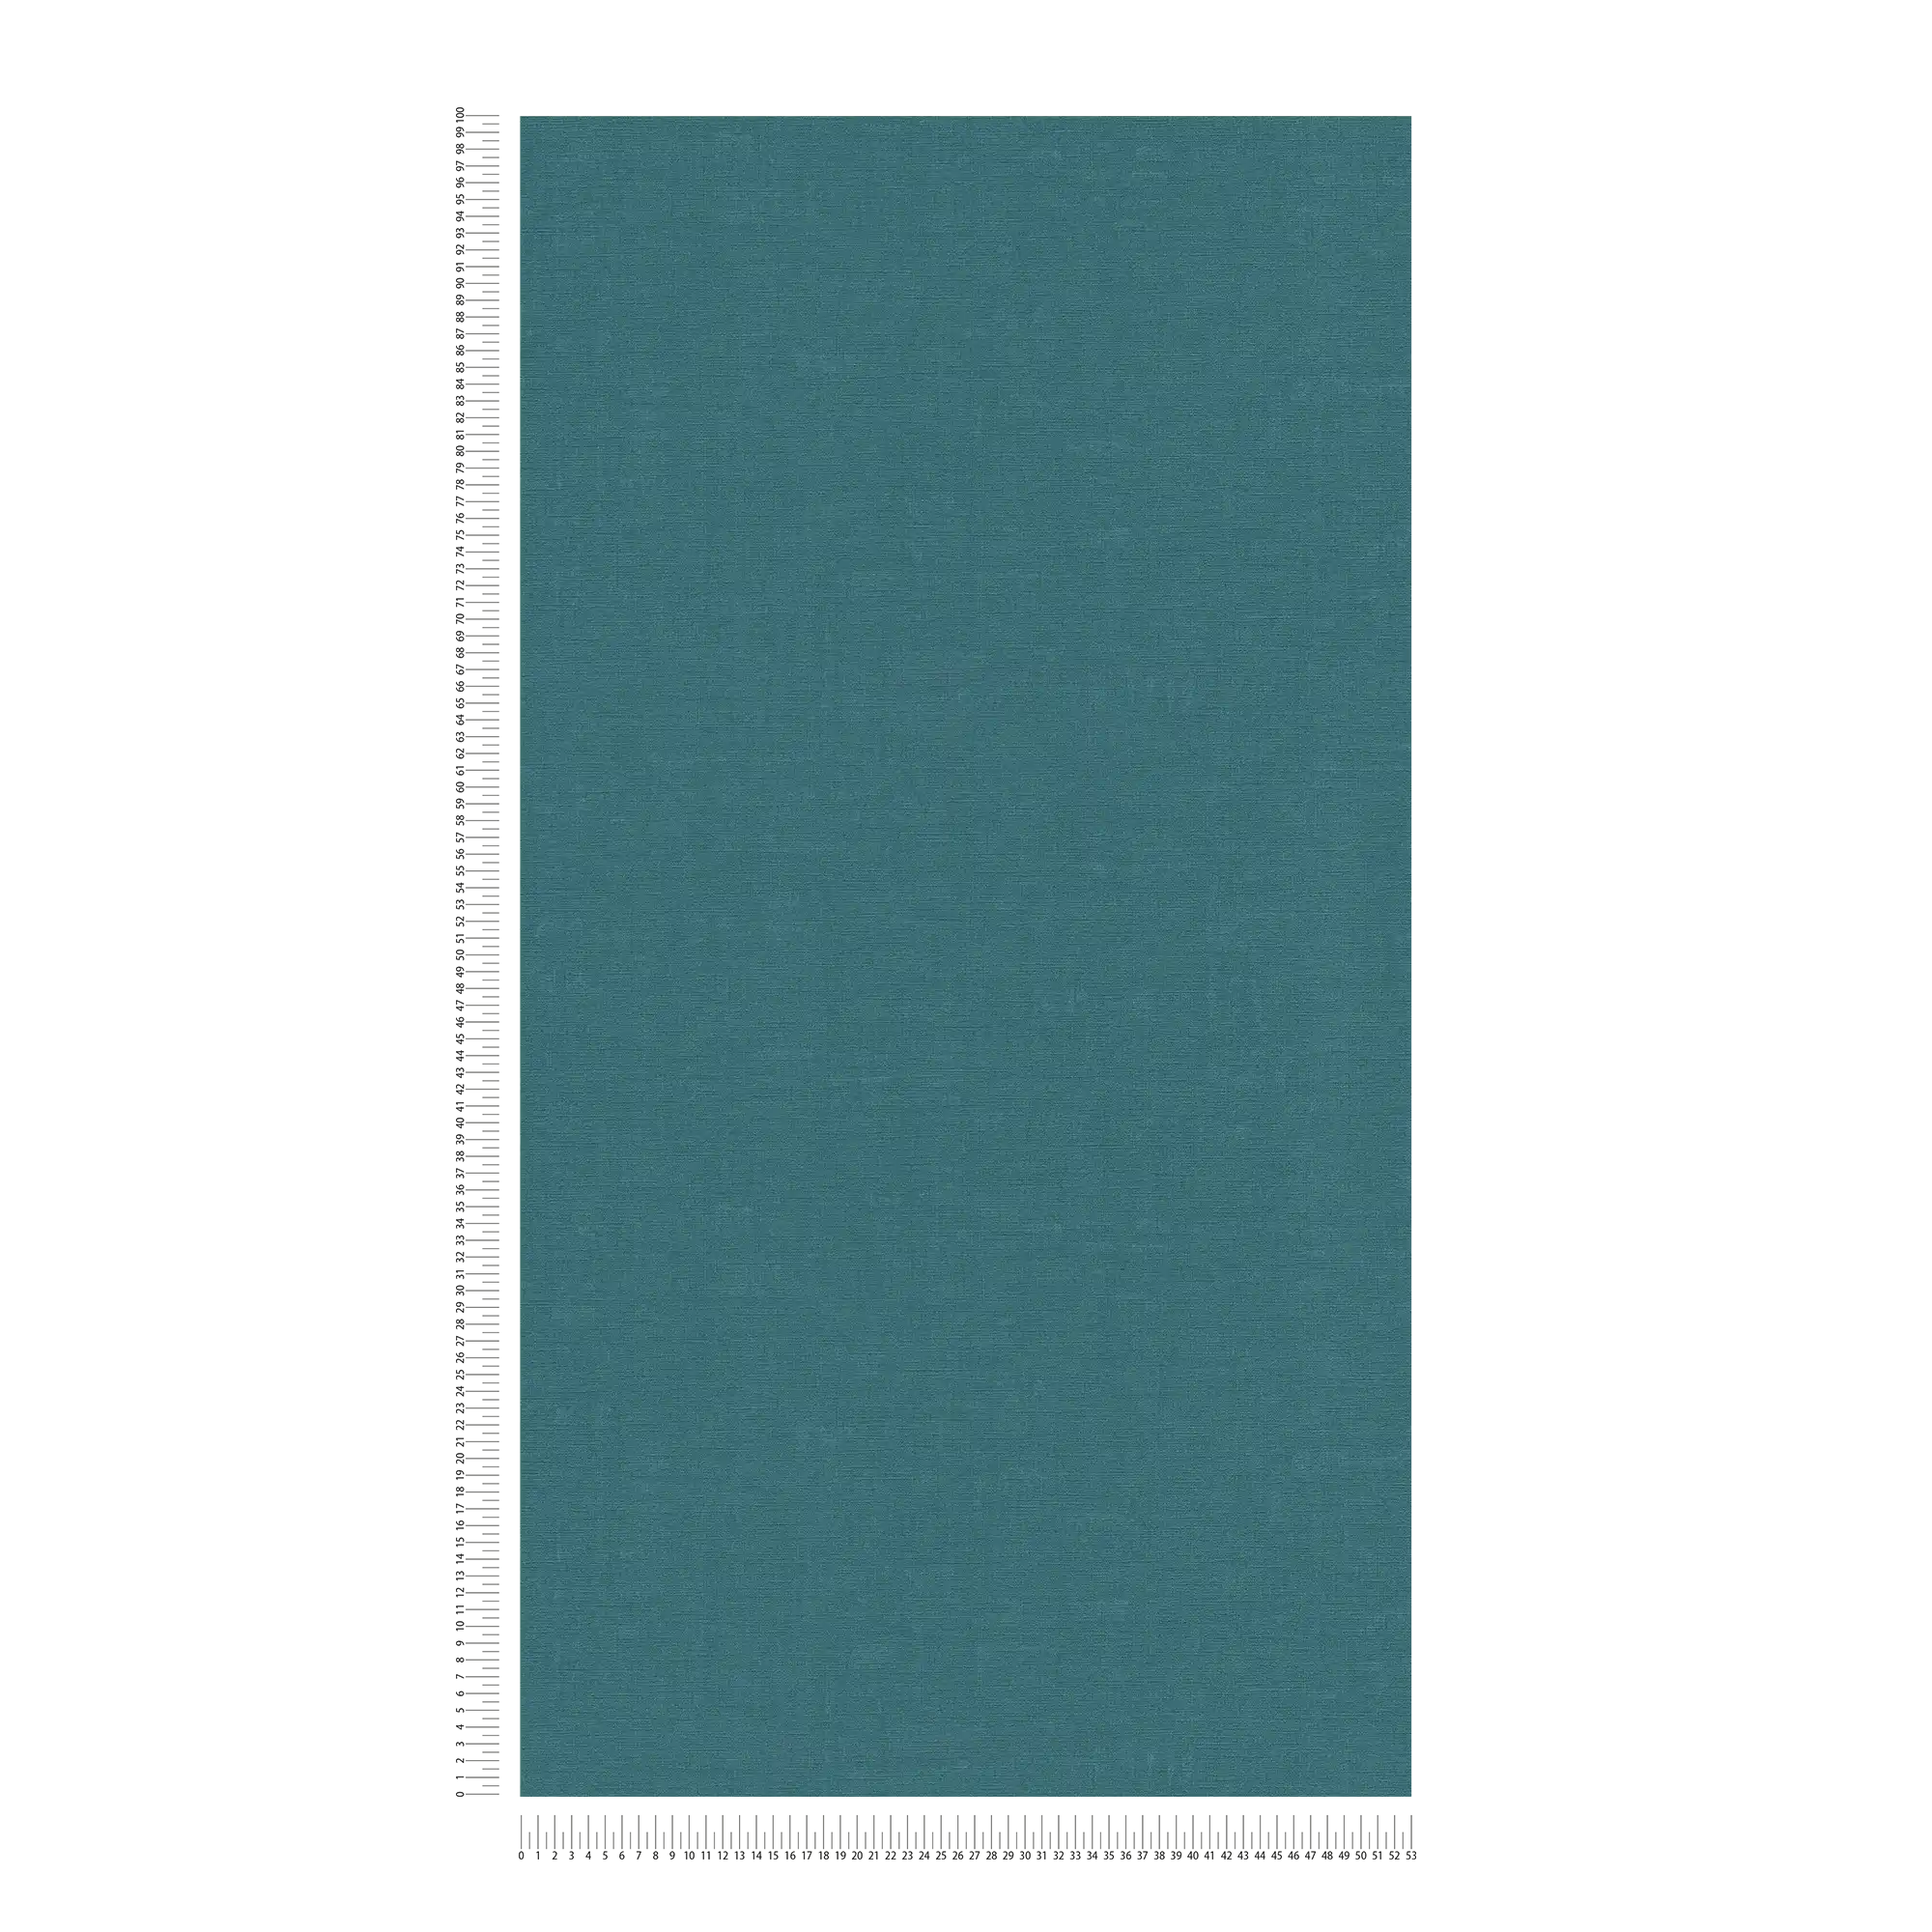             Vliesbehang effen met gevlekt effect - blauw, groen
        